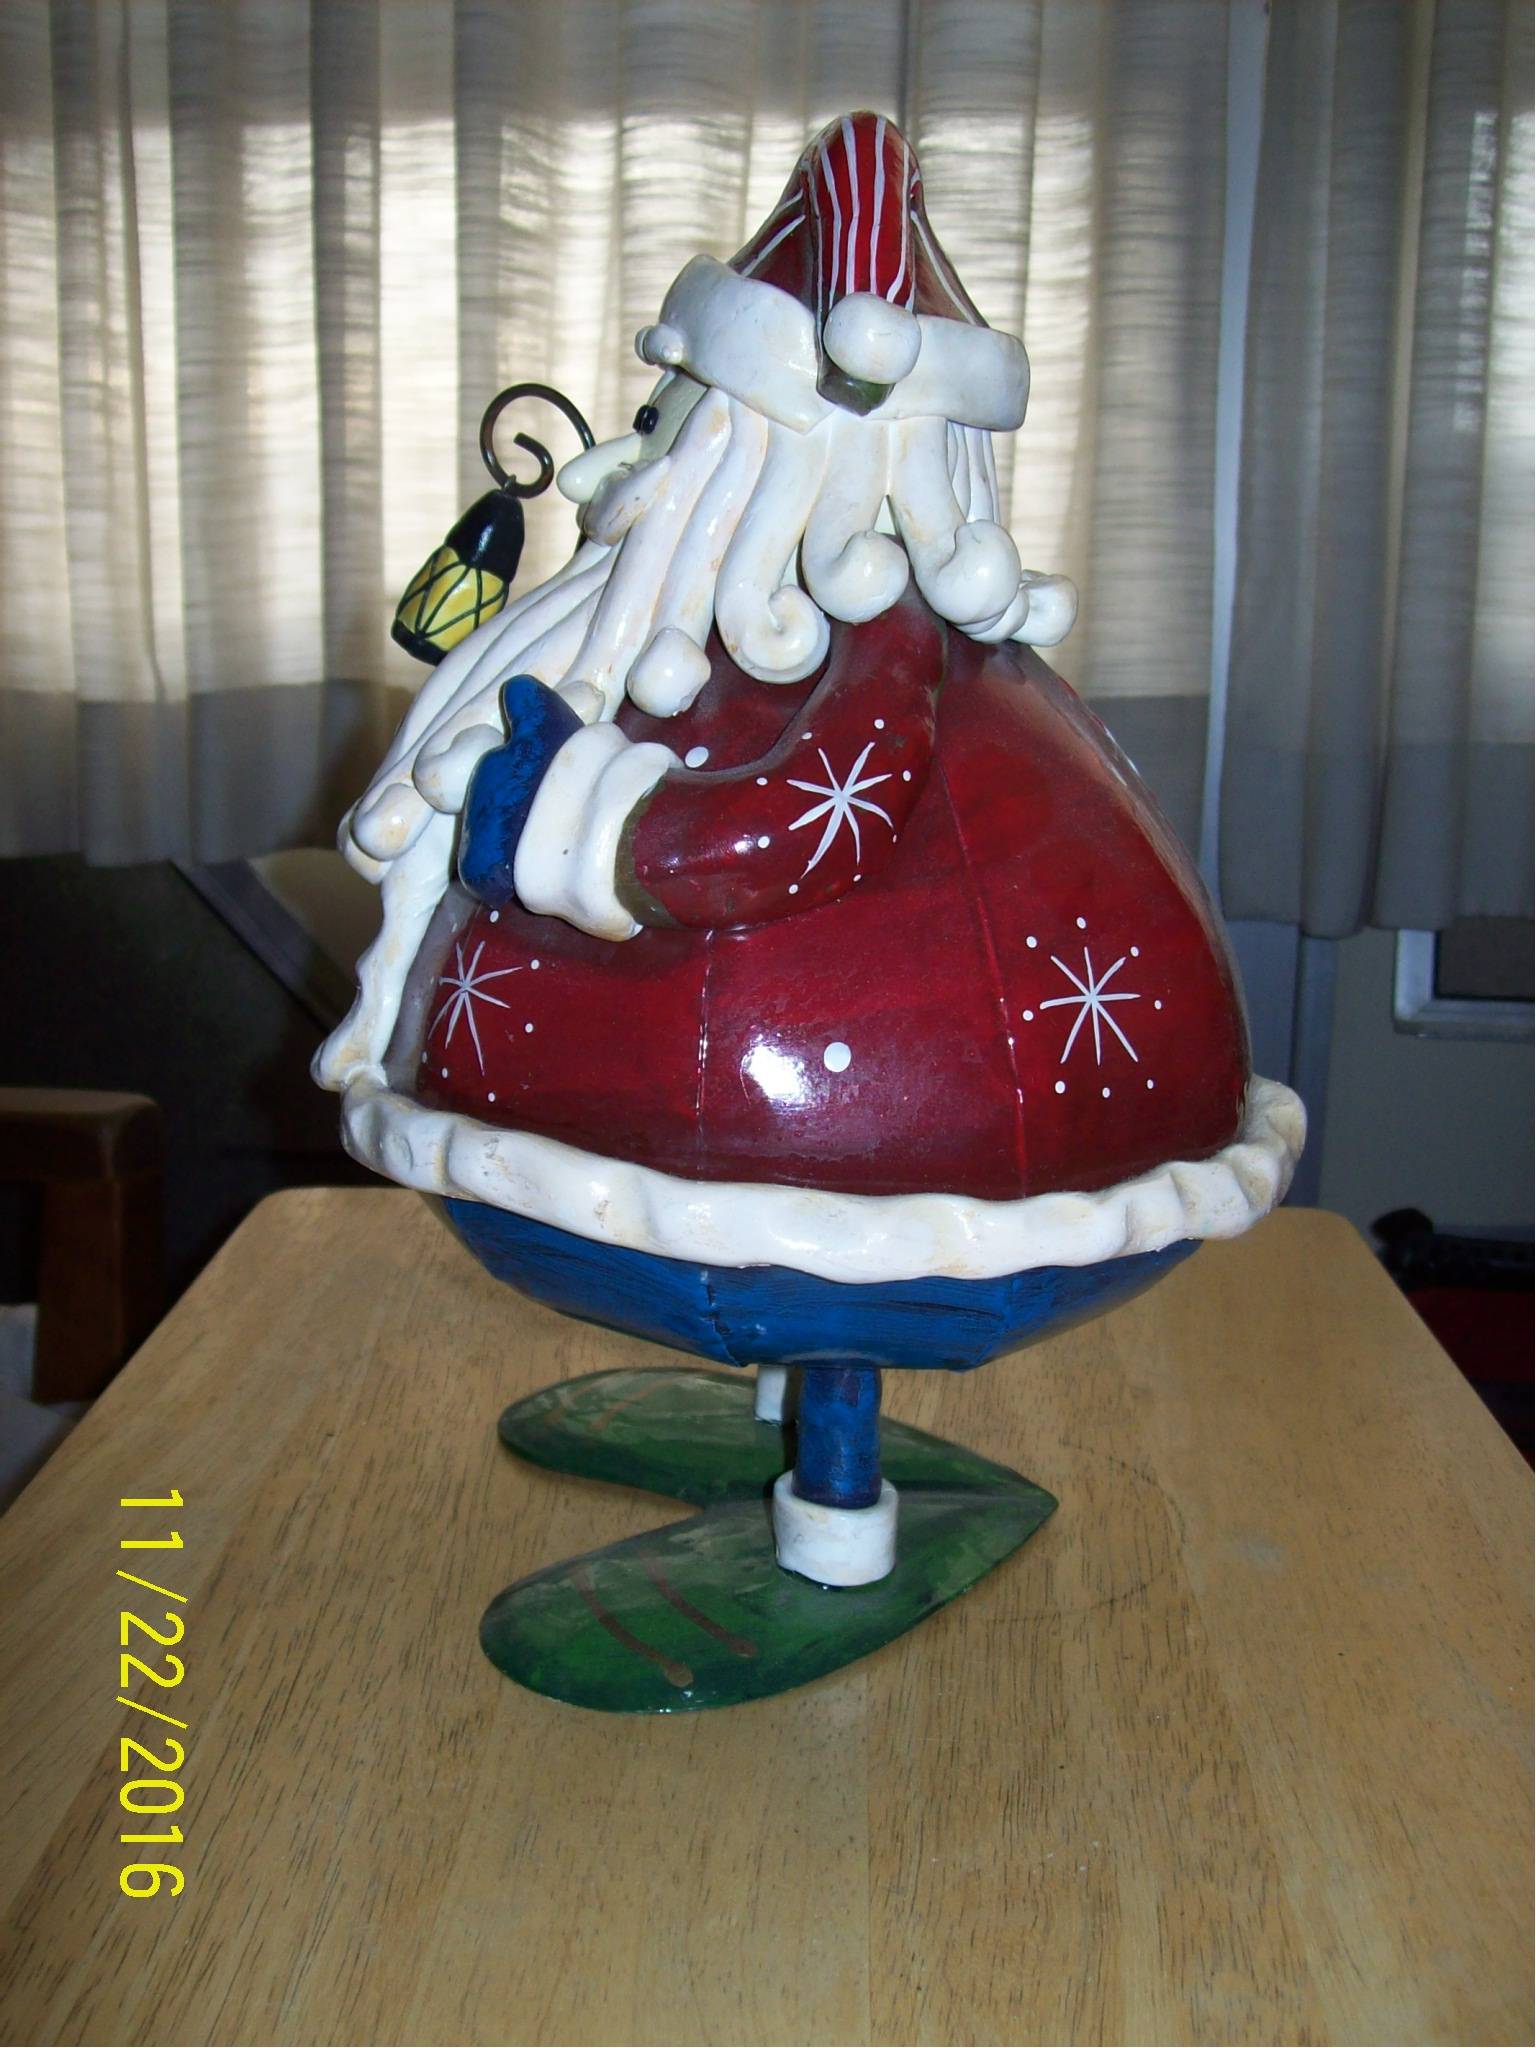 Christmas Xmas Medium Red White Blue 12" Santa Statue Figurine with Lantern